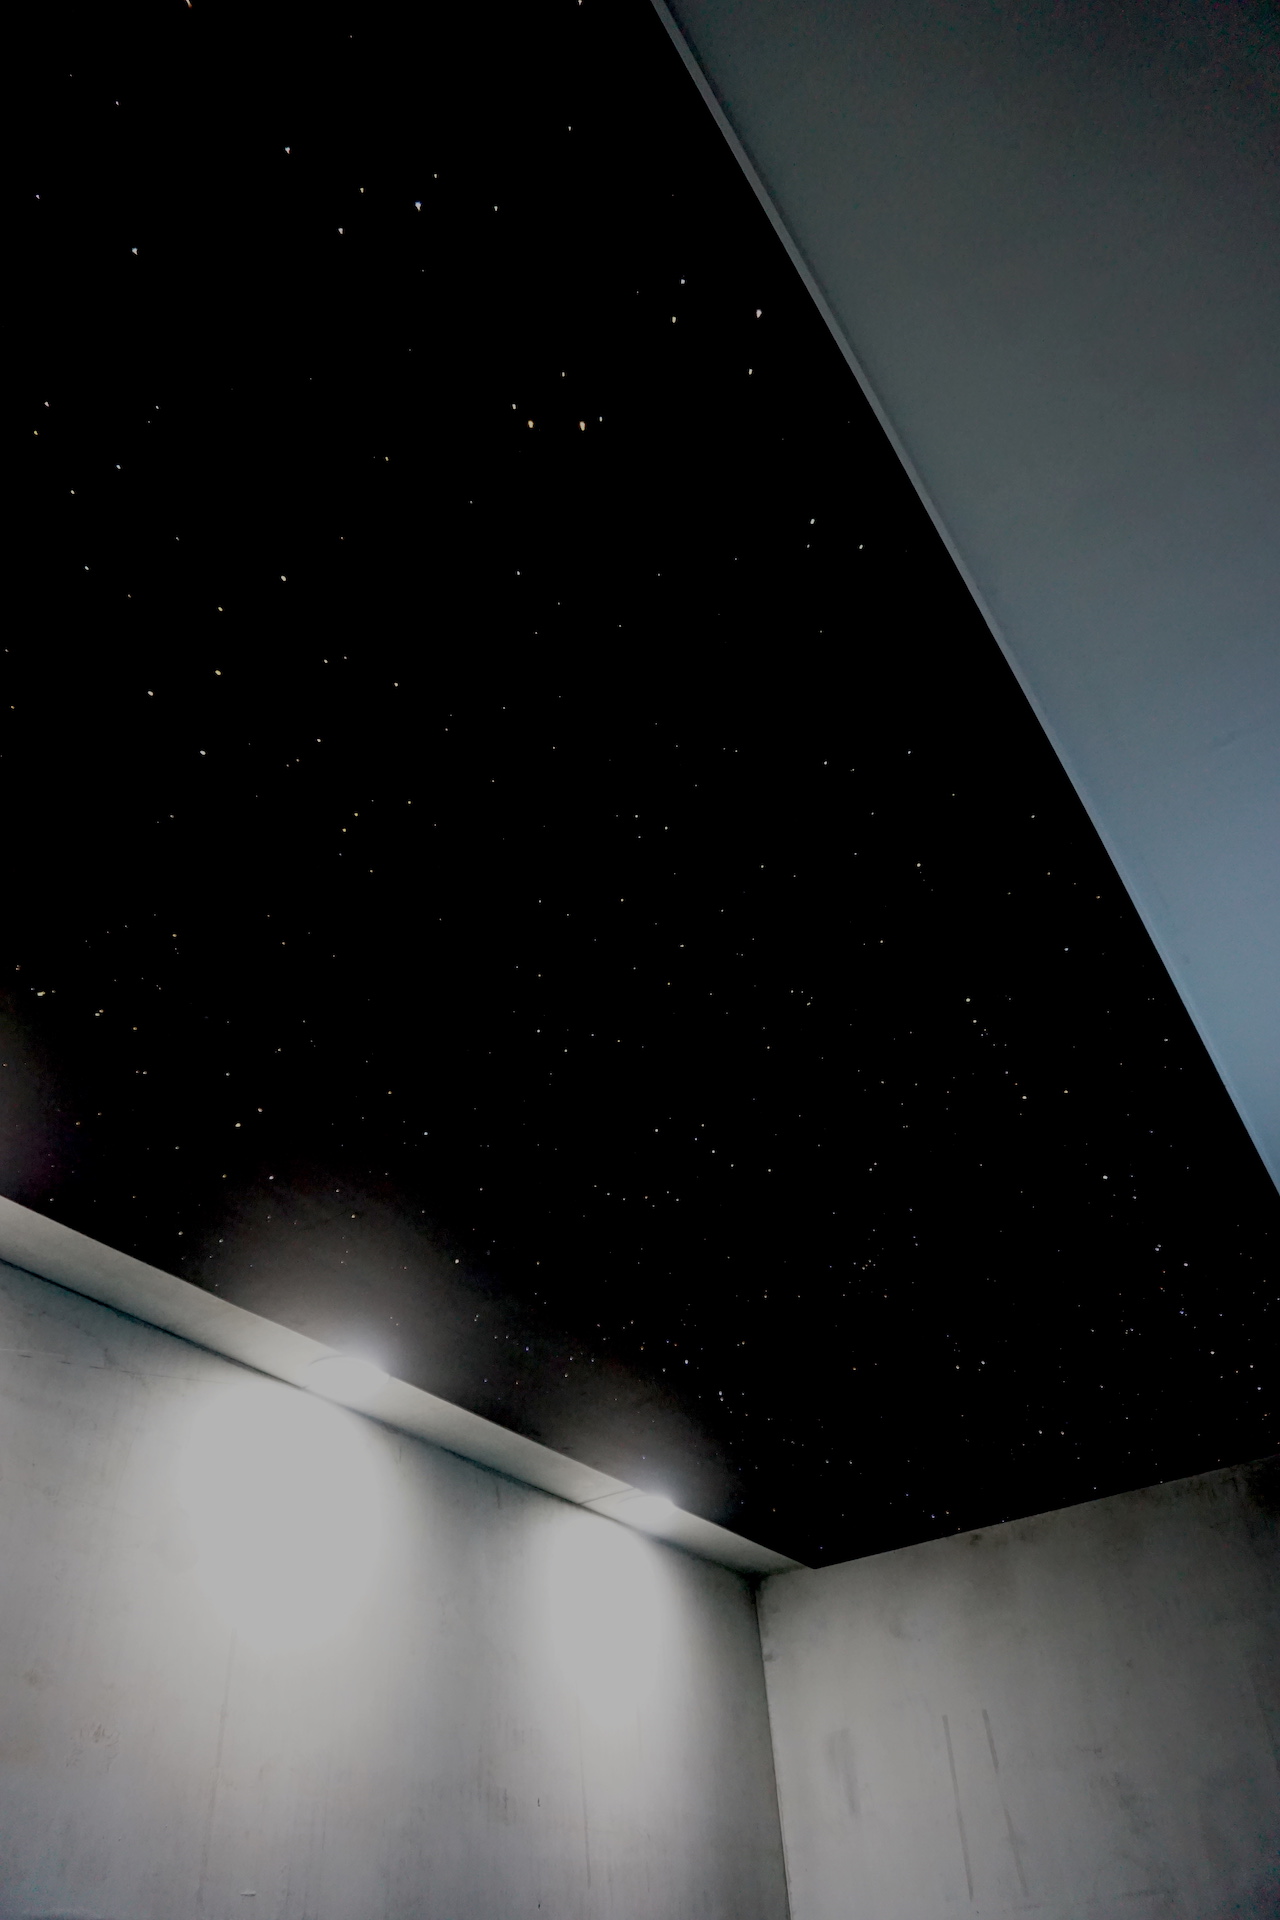 plafond étoilé chambre ciel etoile fibre optic led salle de bain sauna spa piscine mycosmos voies lactées etoiler etoiles filantes voie lactee photos image